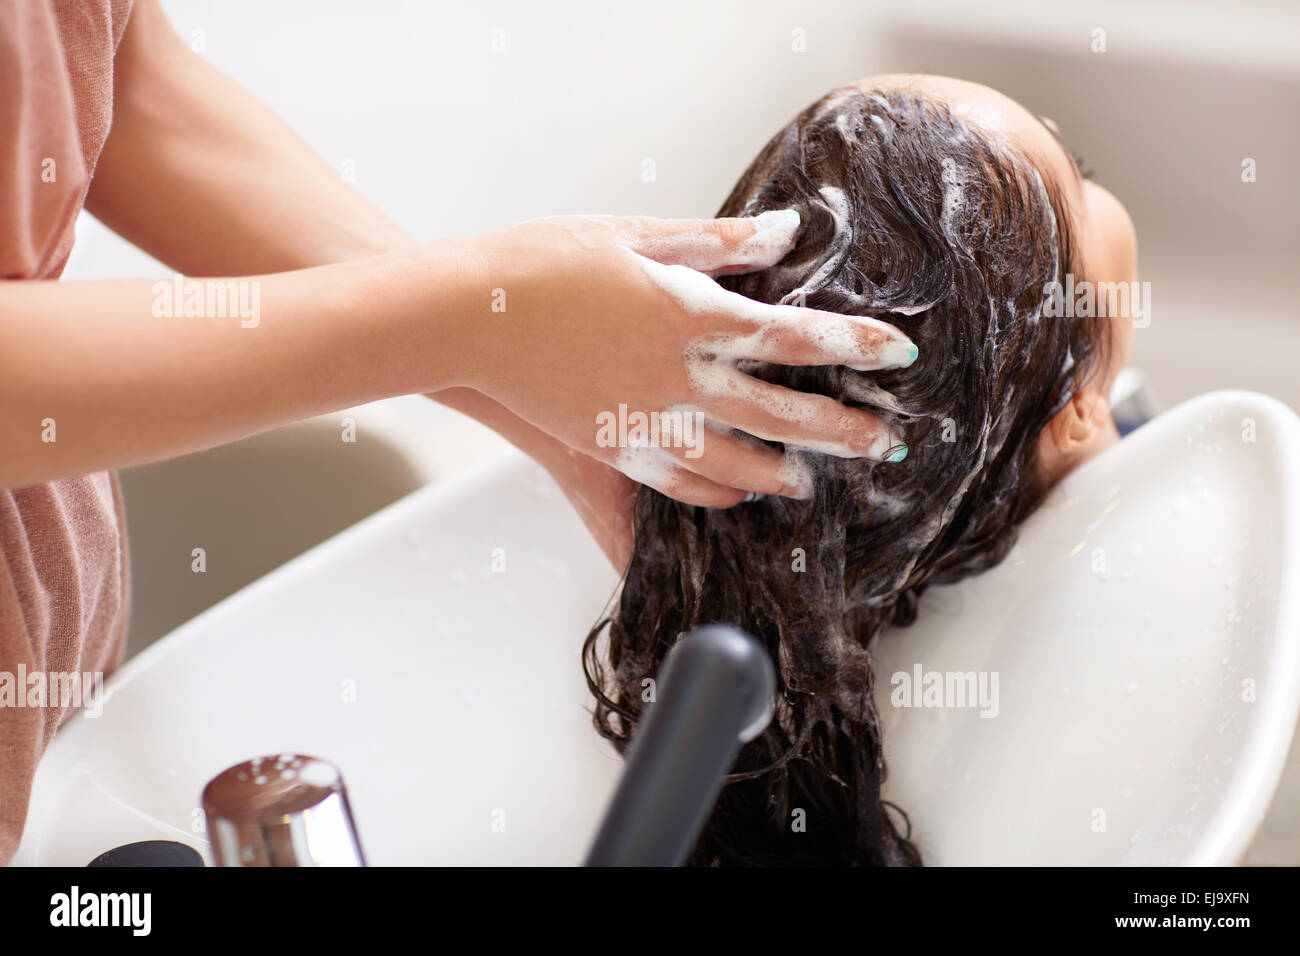 Washing hair Stock Photo